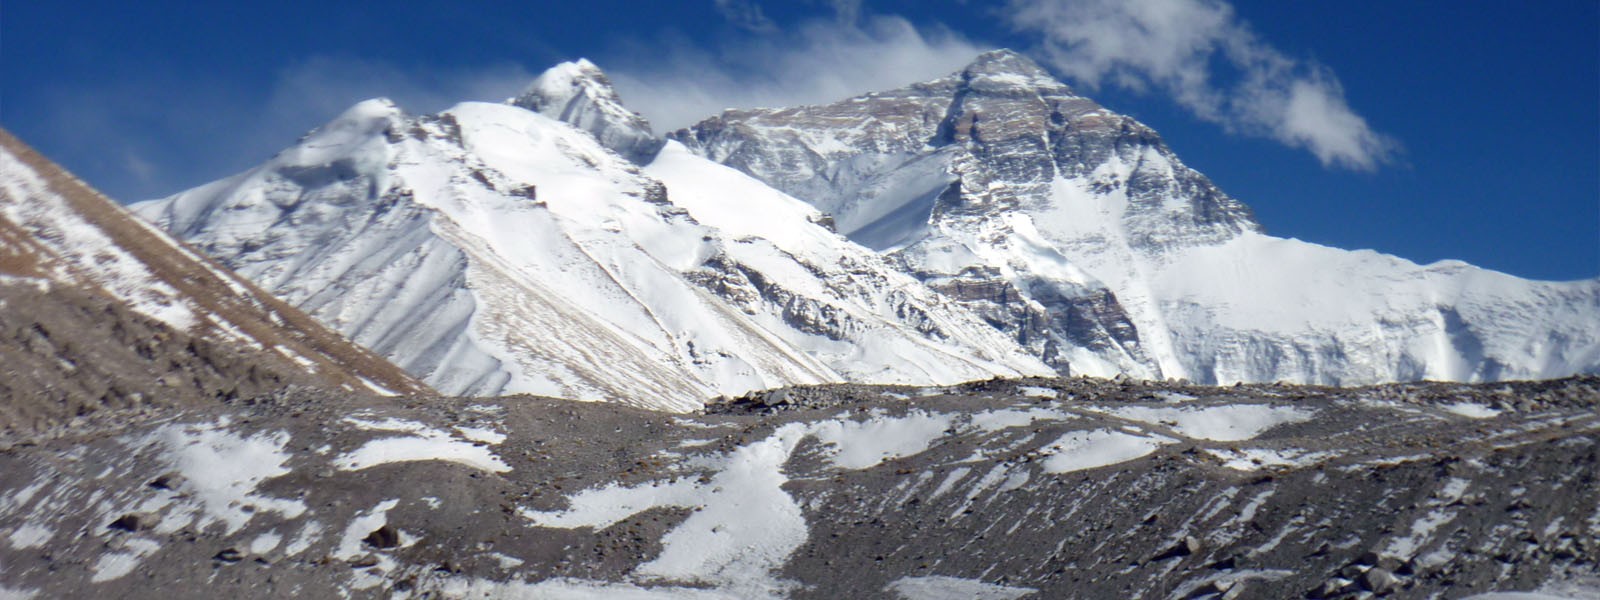 Lhasa - Everest Base Camp